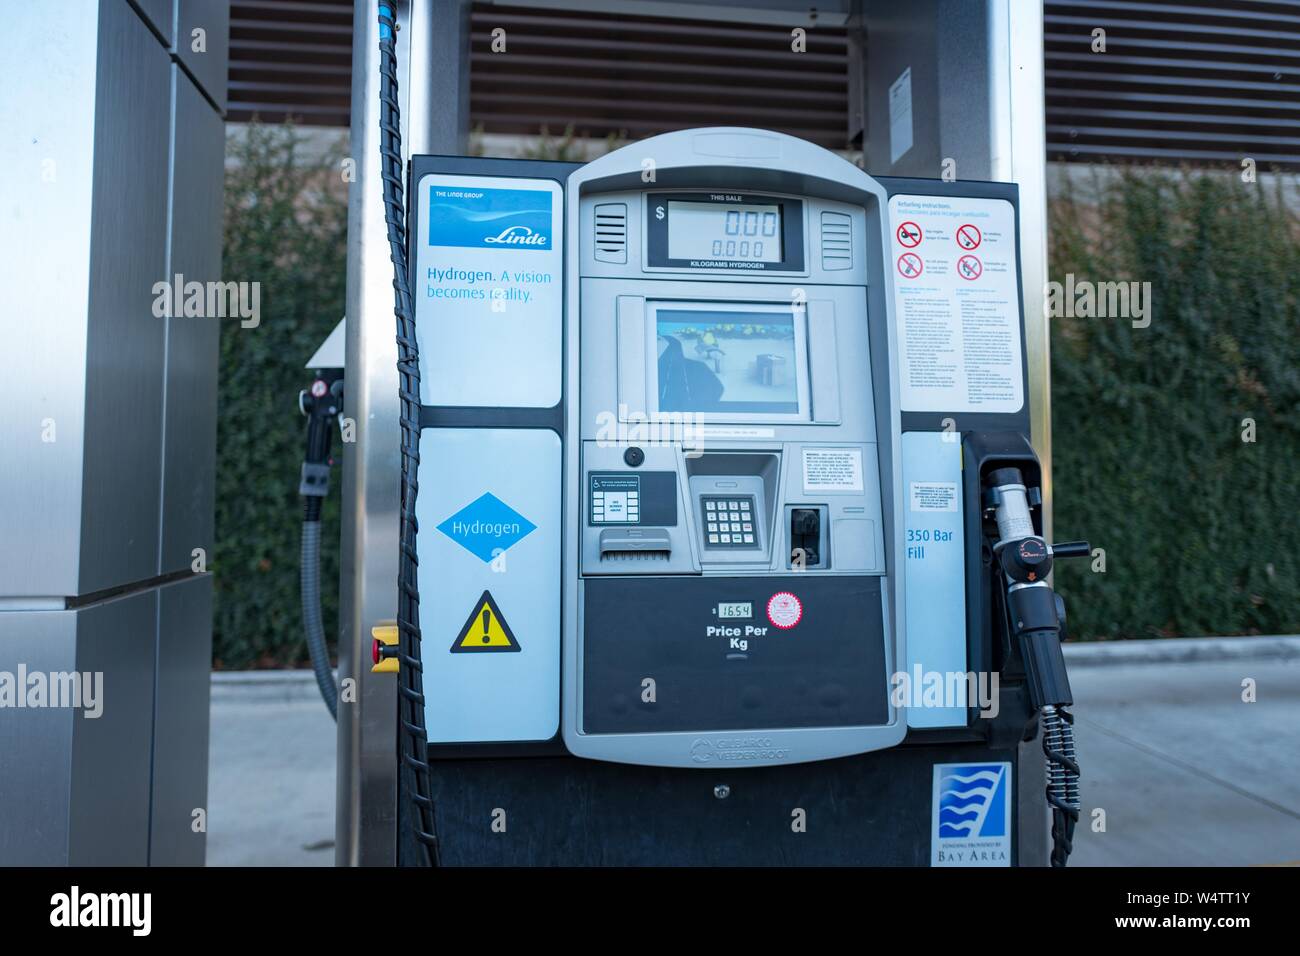 Pumpe Apparate, mit einem Design wie eine Kraftstoffpumpe in einem traditionellen Gas Station, auf eine experimentelle Verbraucher Wasserstoff-tankstelle für Brennstoffzelle emissionsfreie Autos, in San Ramon, Kalifornien, November 4, 2018. () Stockfoto